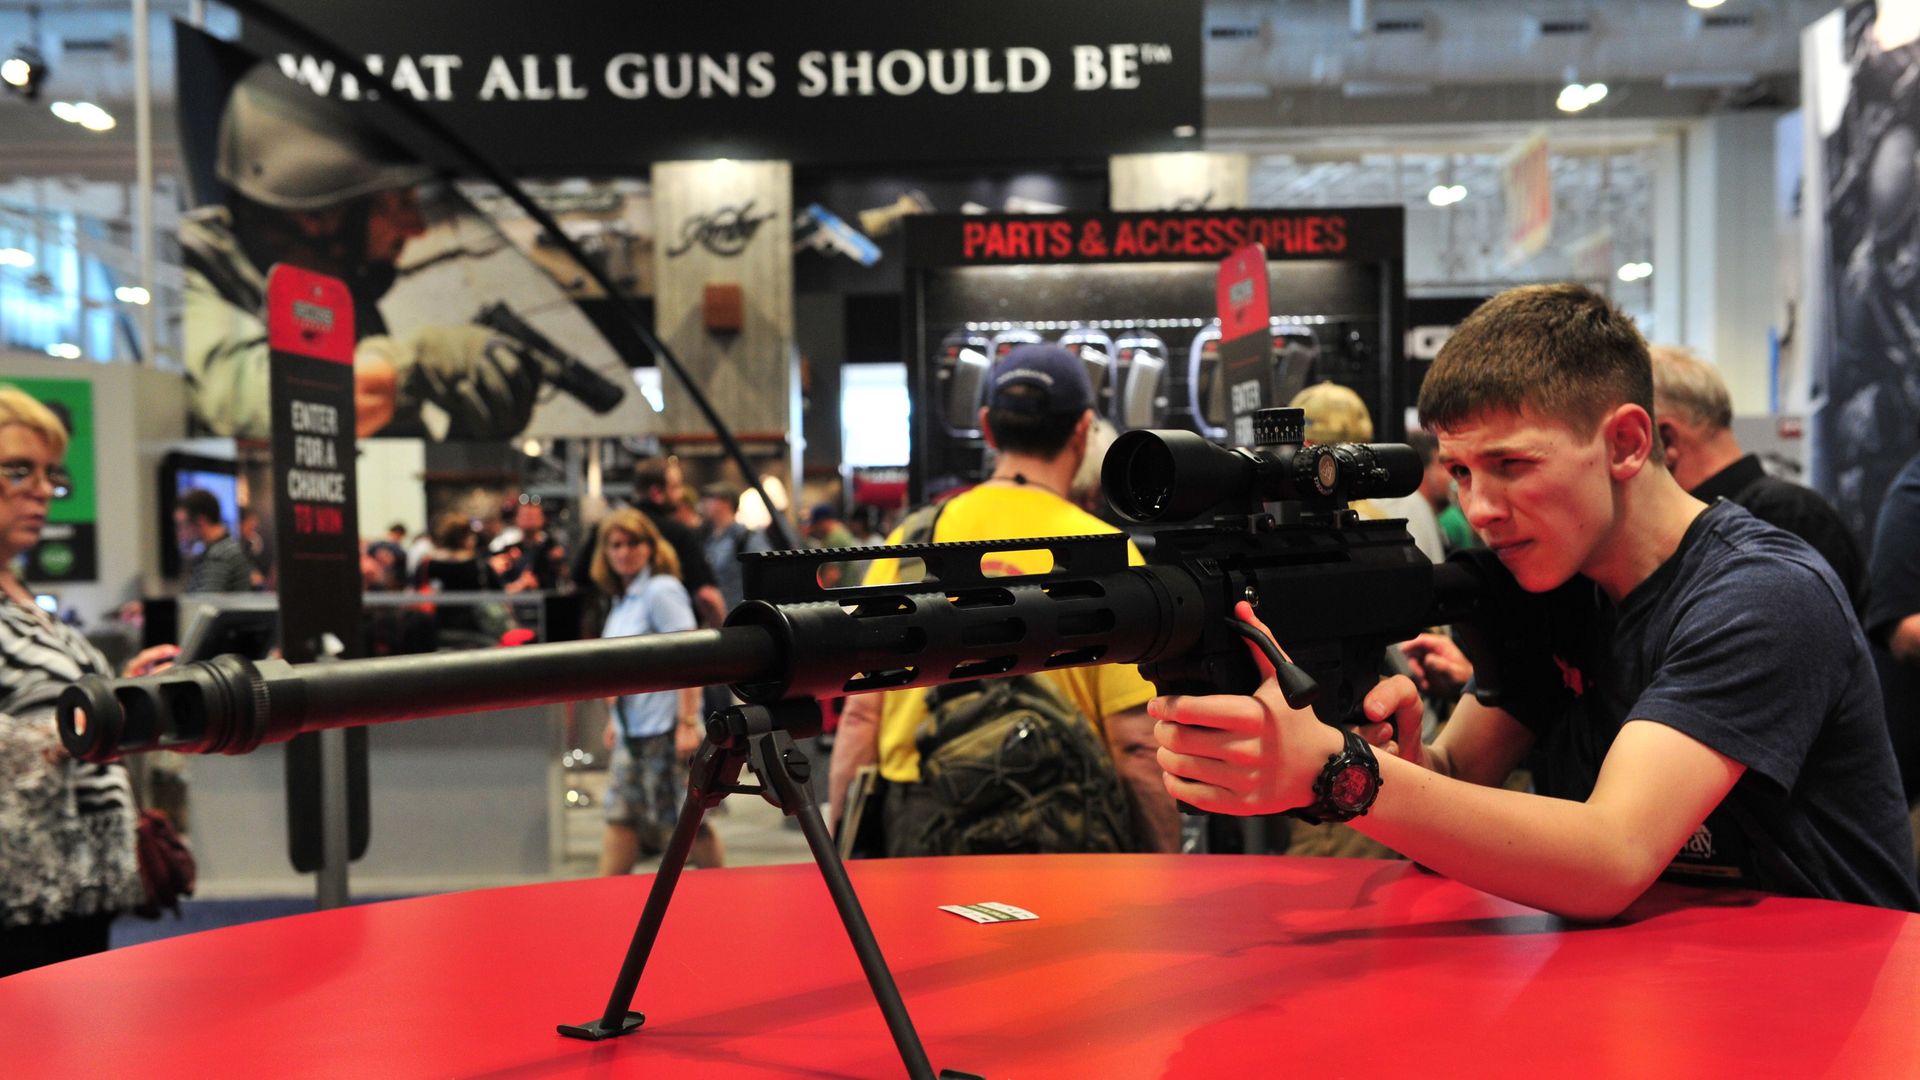 Man tries out Bushmaster rifle at gun show.